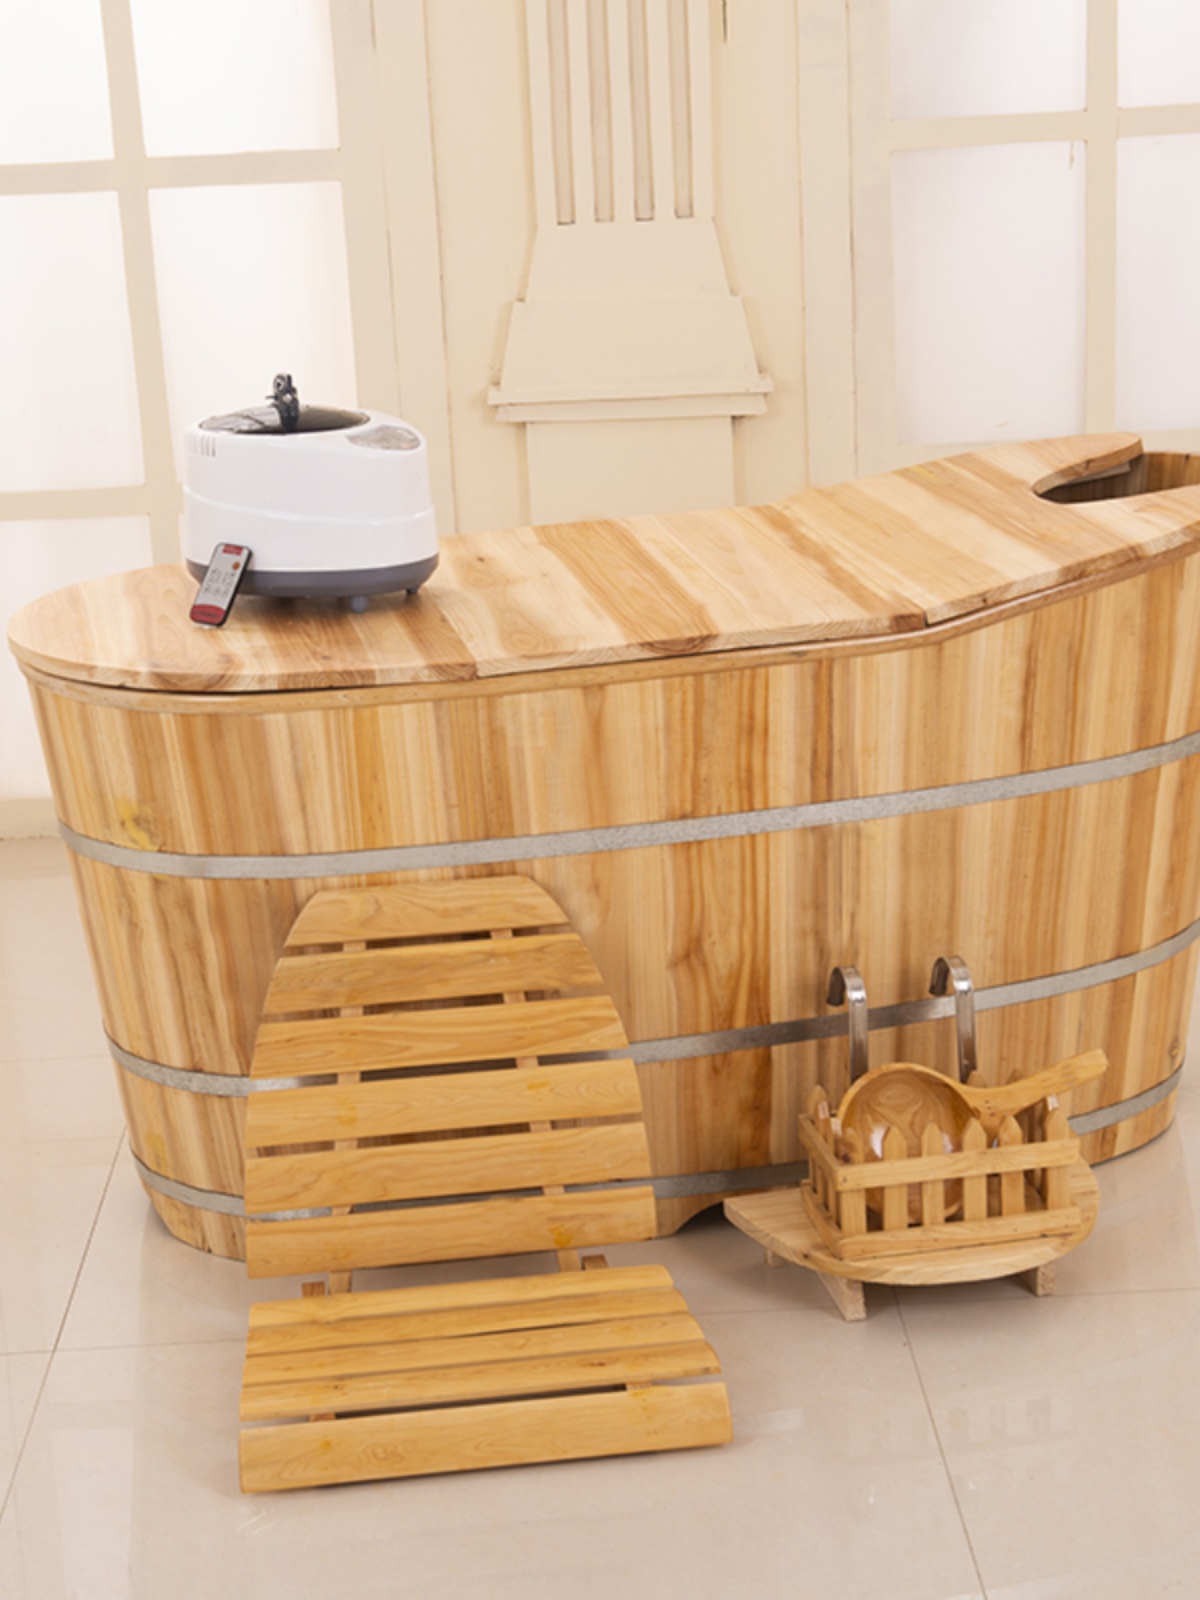 实木浴盆浴缸木桶沐浴桶木制浴盆家用泡澡桶大人木头熏蒸桶全身。